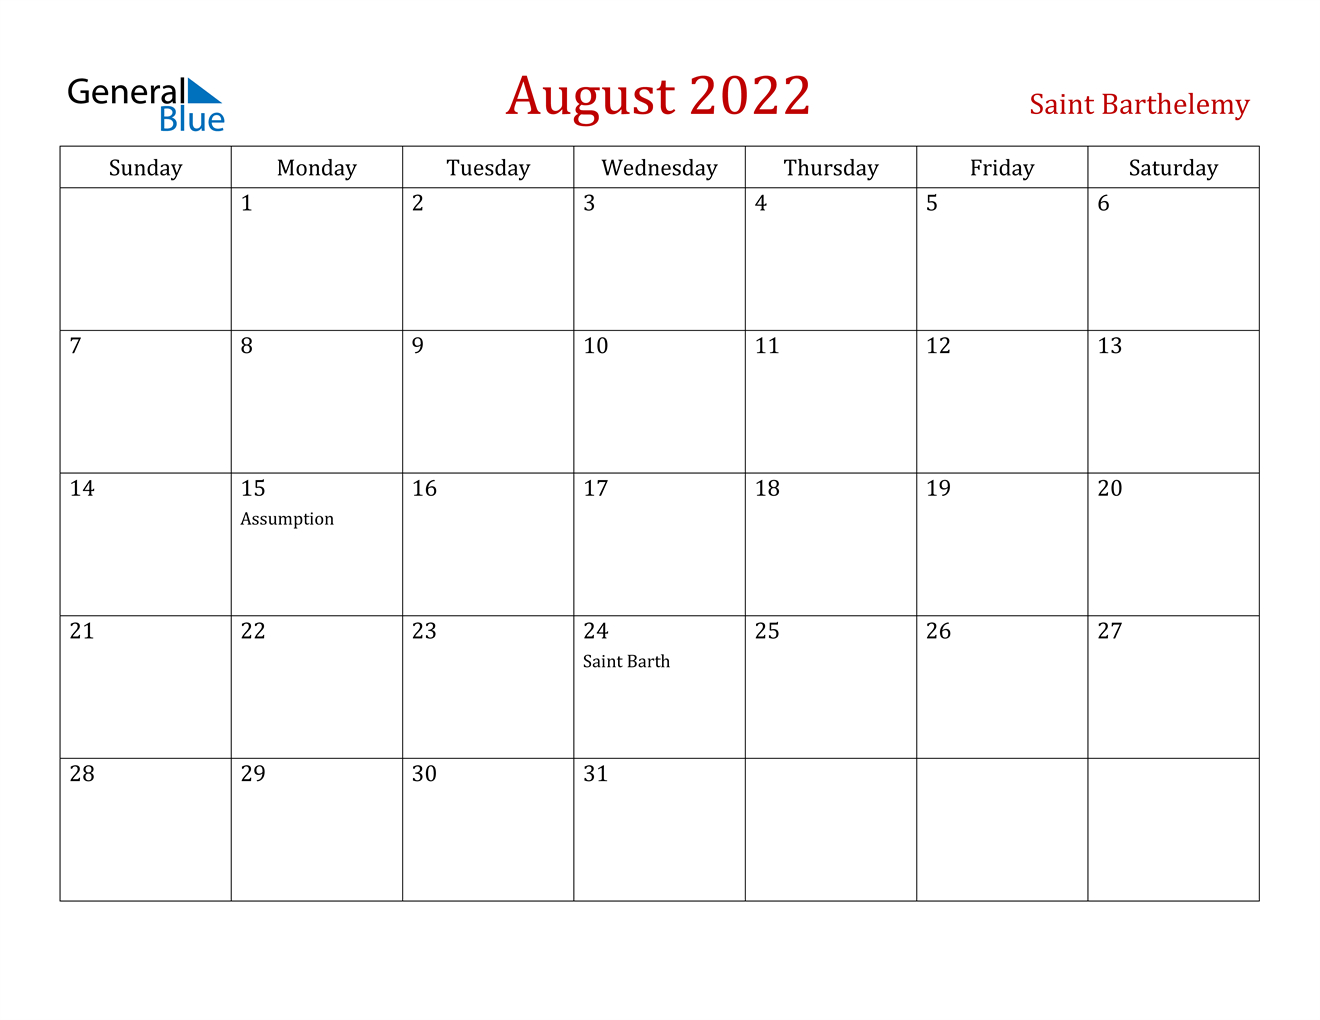 August 2022 Calendar - Saint Barthelemy